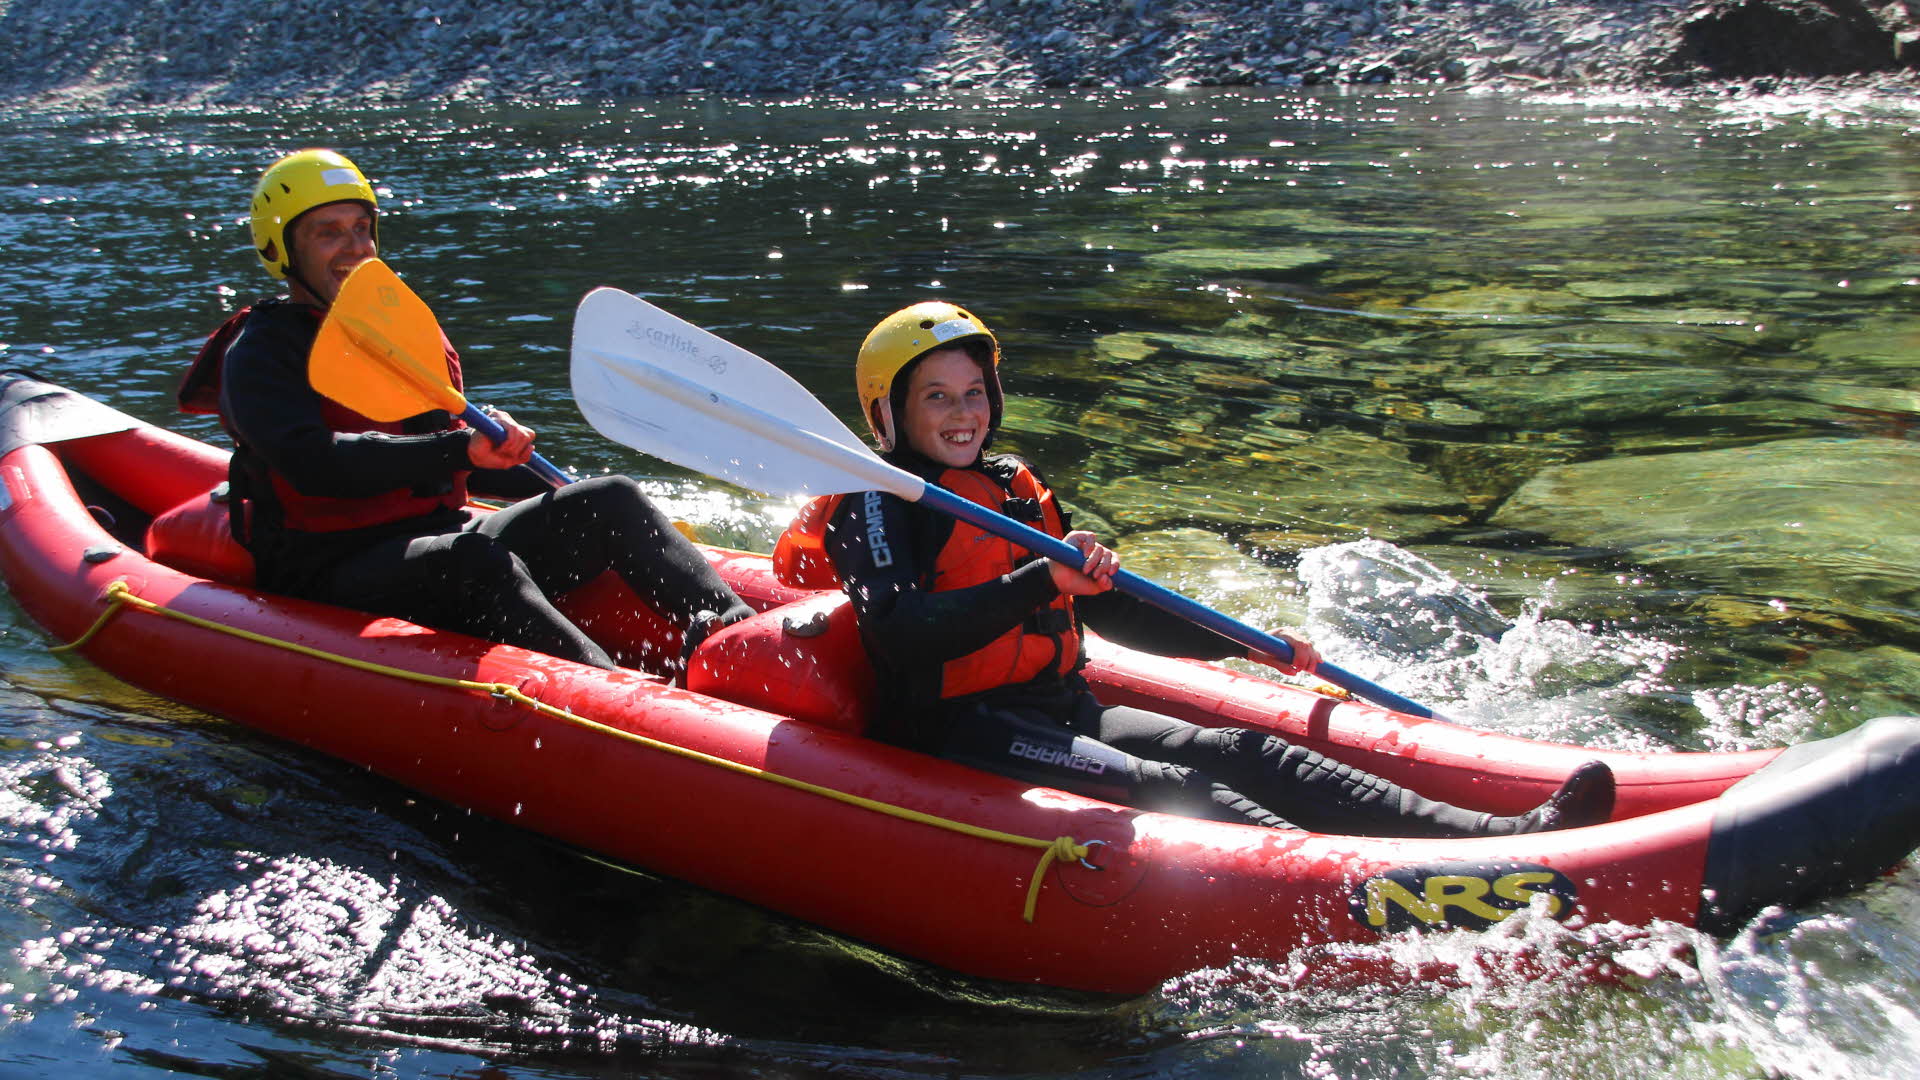 两个男孩正在一条清澈的河流上的红色橡皮船中微笑。手里拿着桨，身上穿着救生衣和防寒泳衣，头上戴着头盔。